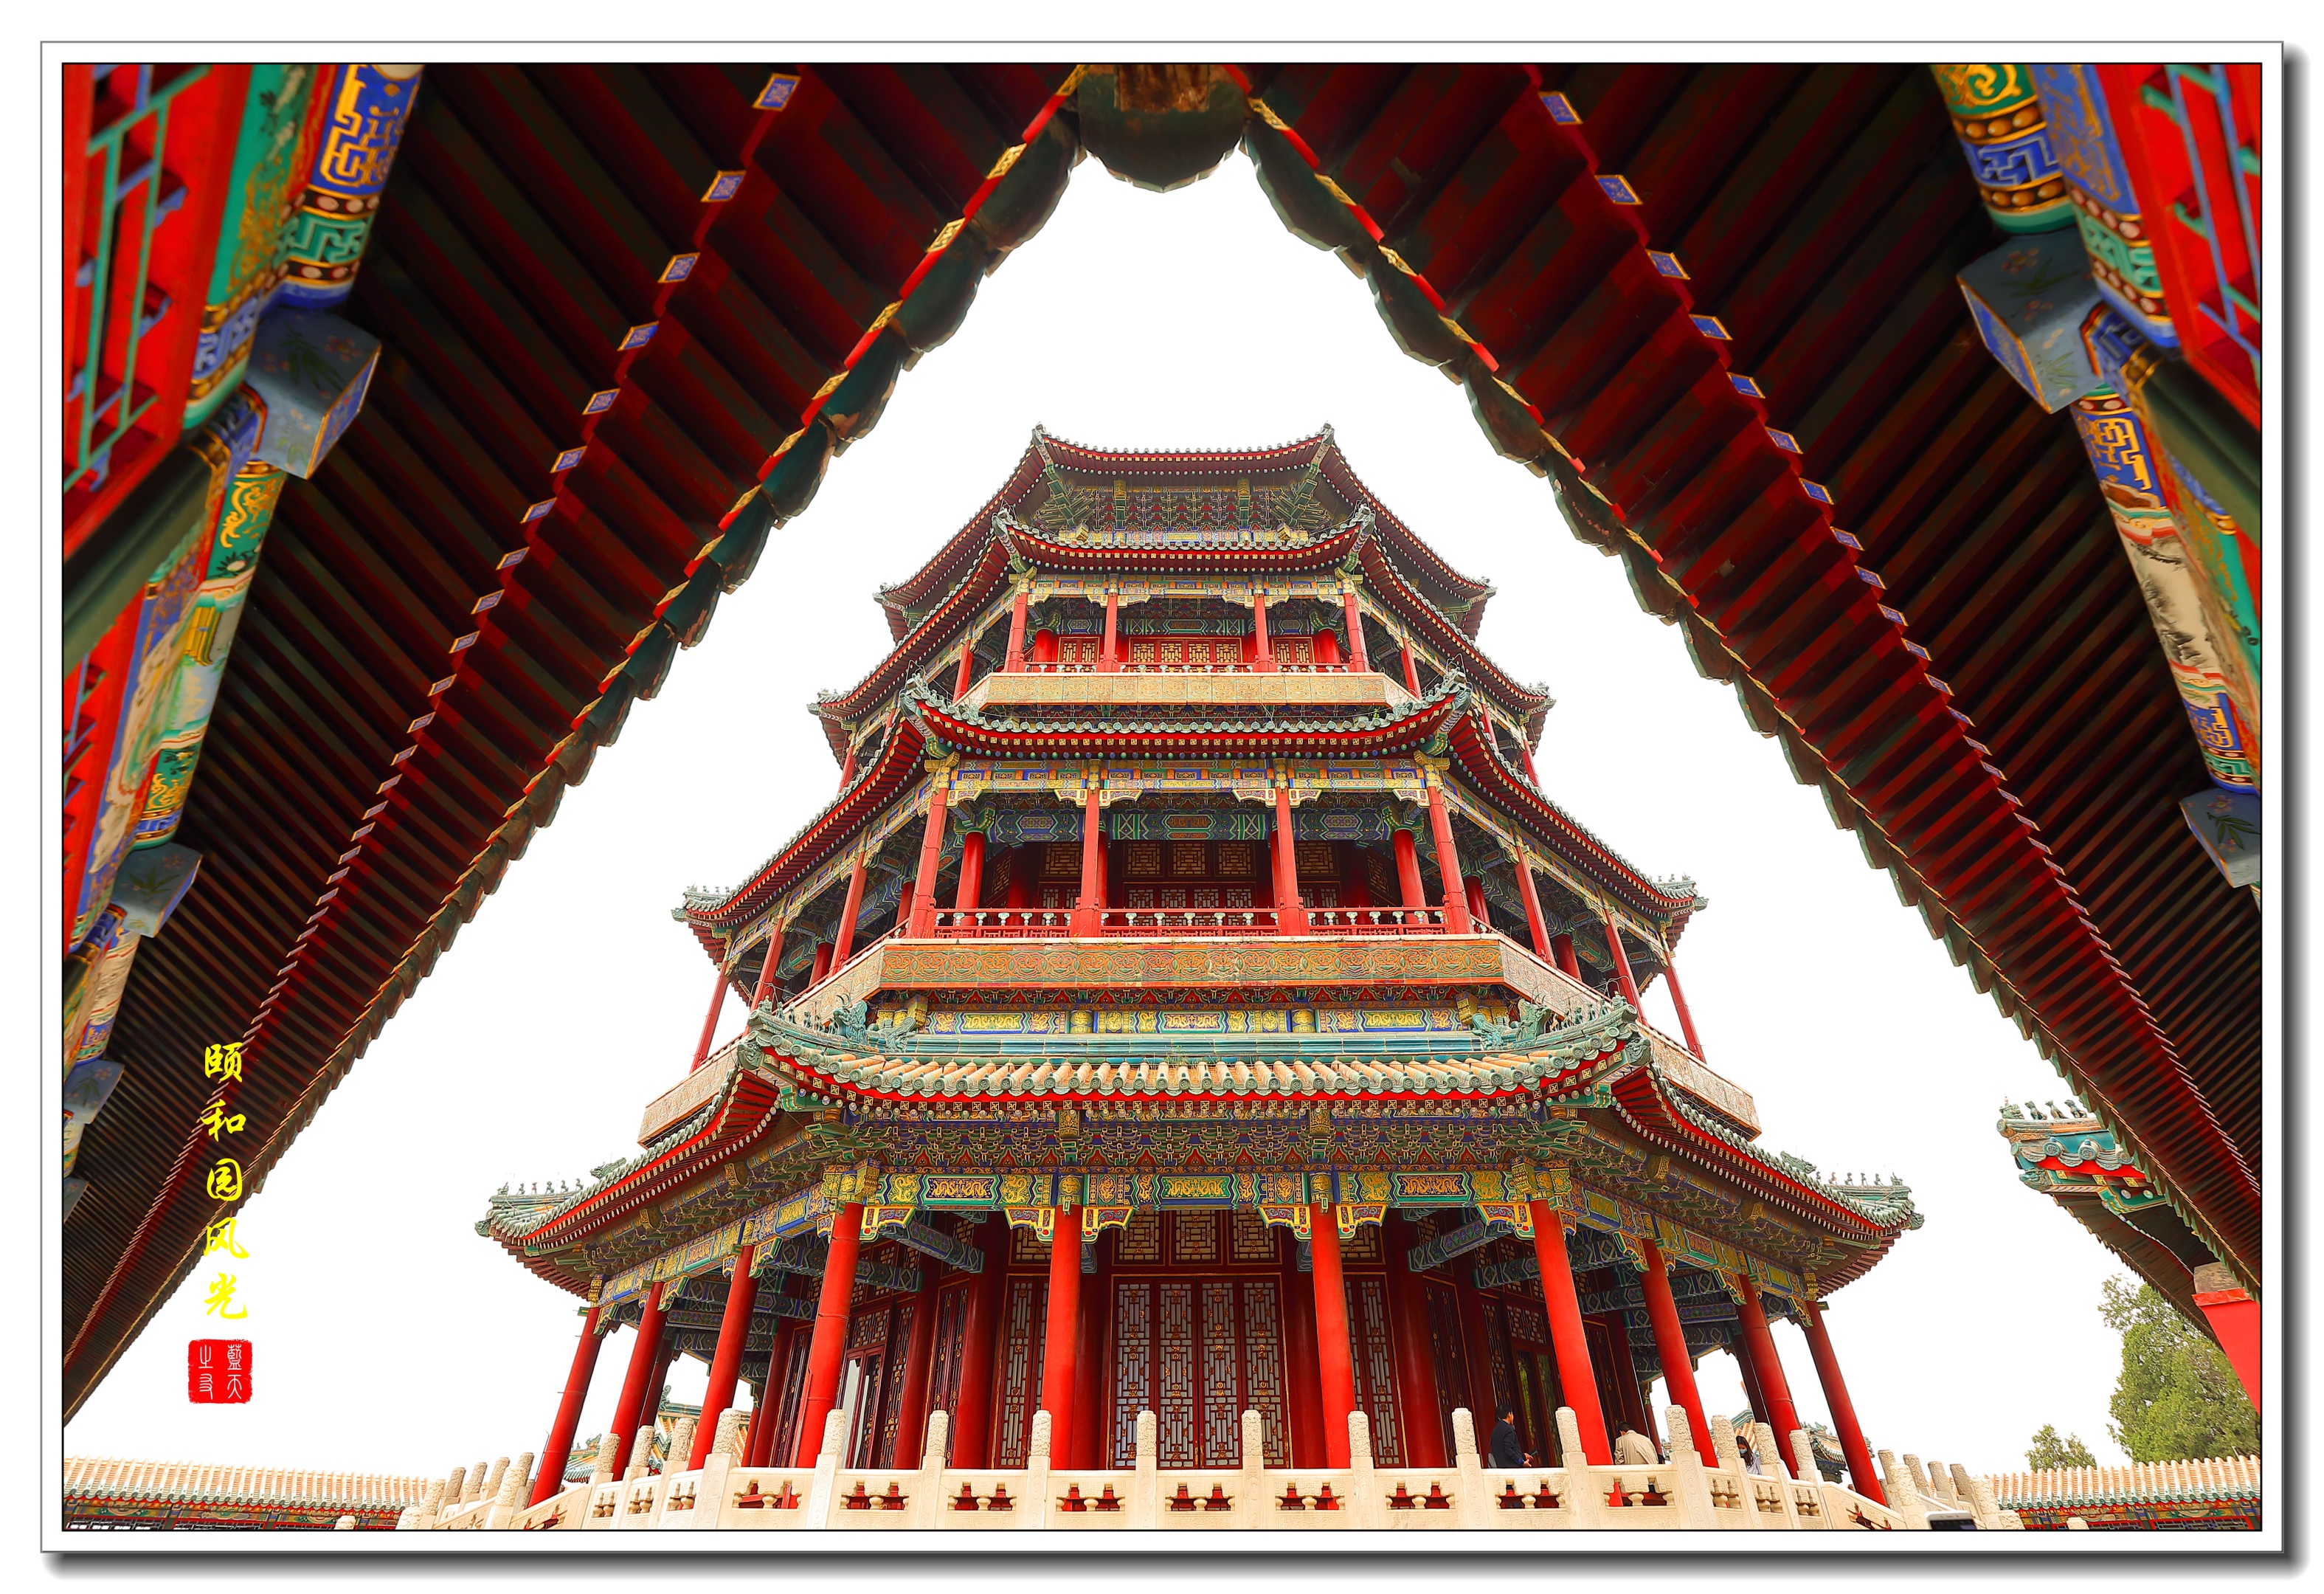 佛香阁是北京市颐和园的主体建筑,建筑在万寿山前山高20米的方形台基